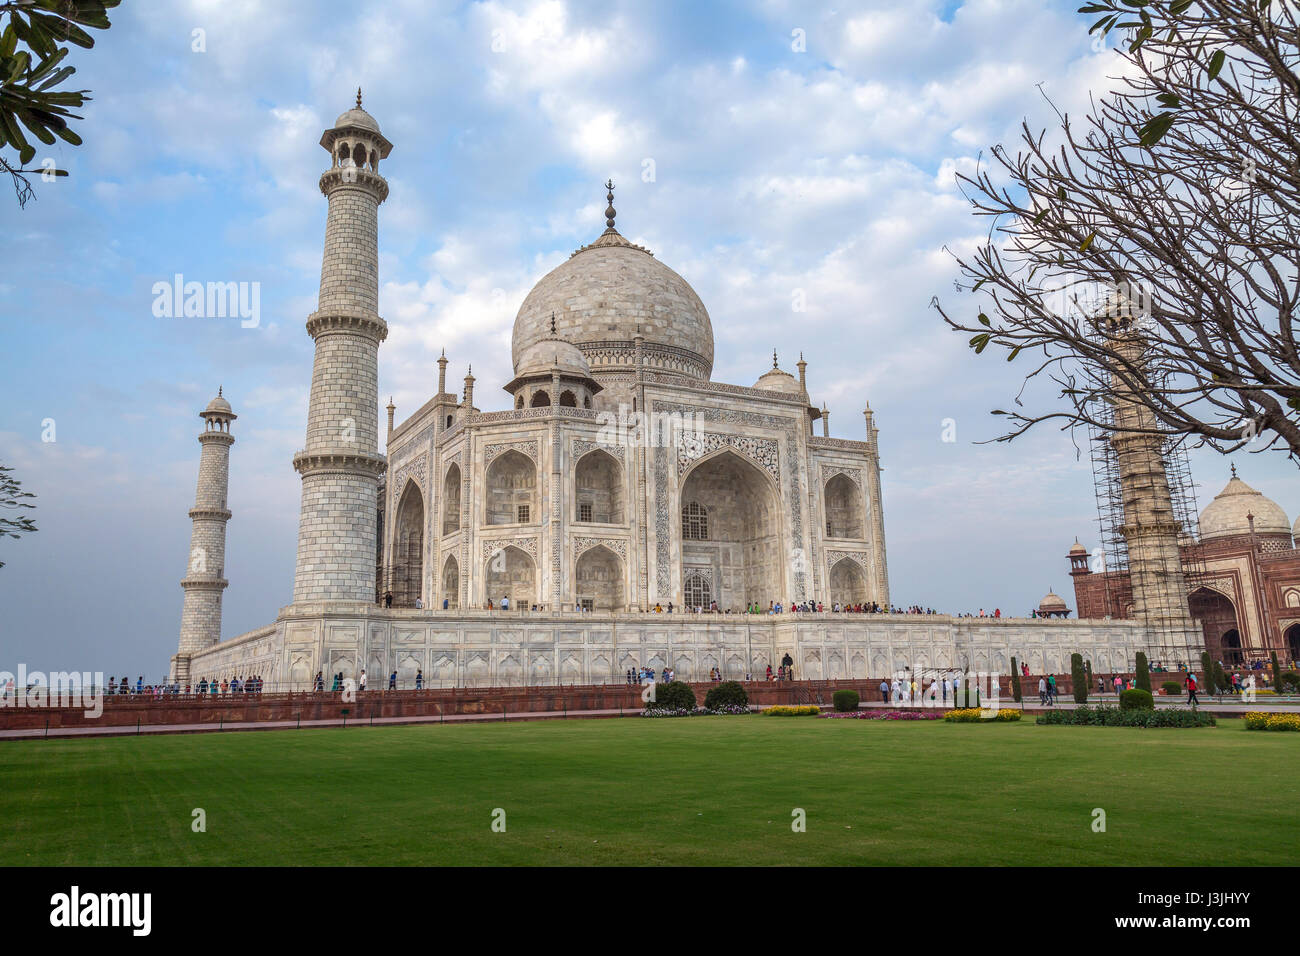 Taj Mahal weißen Marmor-Mausoleum gebaut von Kaiser Shahjahan trägt das Erbe der indischen Mogul-Architektur. Zum UNESCO-Weltkulturerbe. Stockfoto